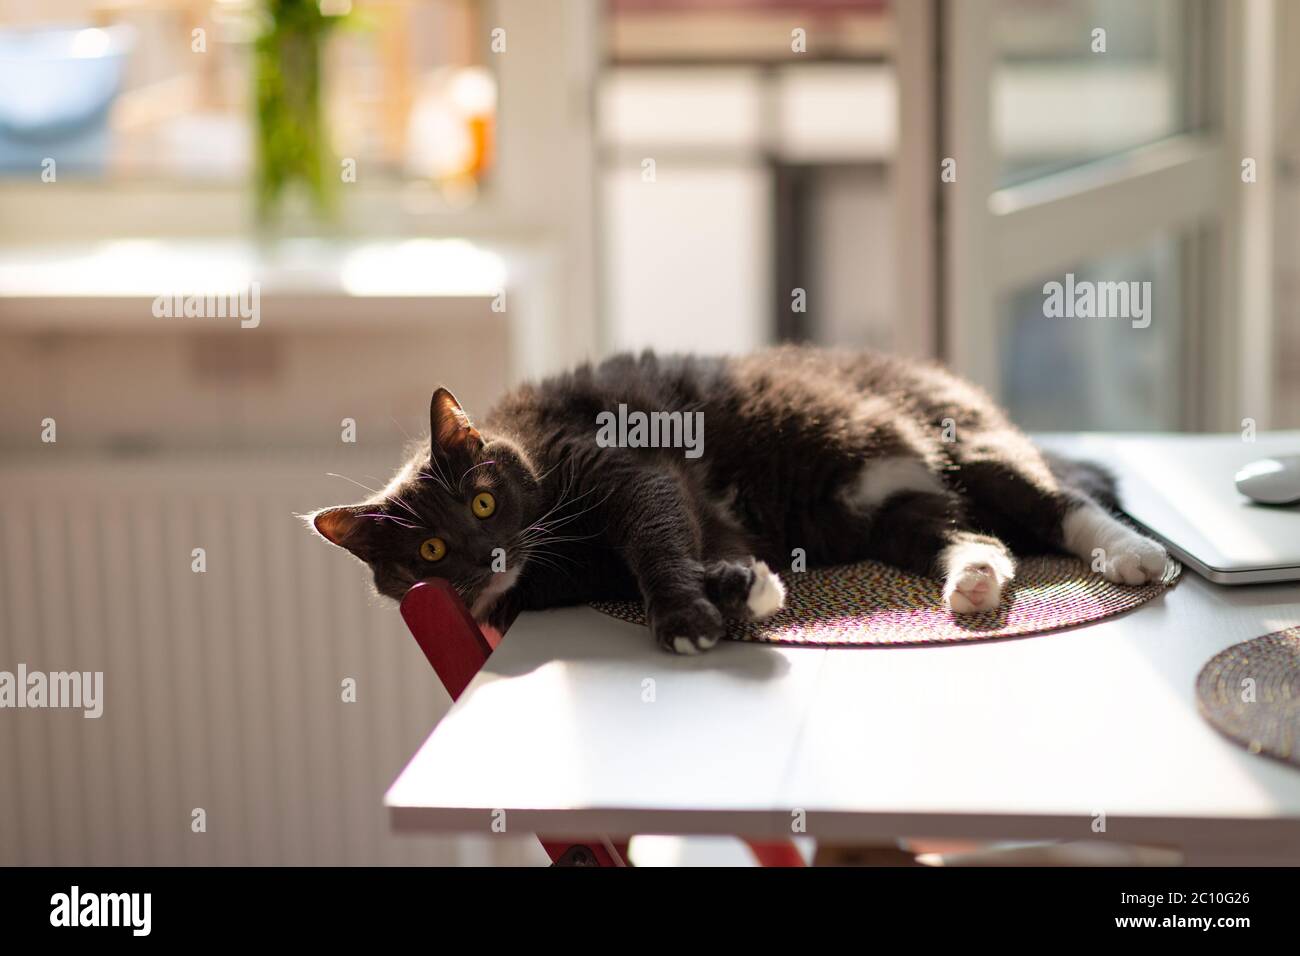 Gatto nero soffiato e sonnolento con occhi sorpresi che riposano sul tavolo da cucina fino a quando i proprietari non vedono. Permissiveness agli animali domestici amati Foto Stock